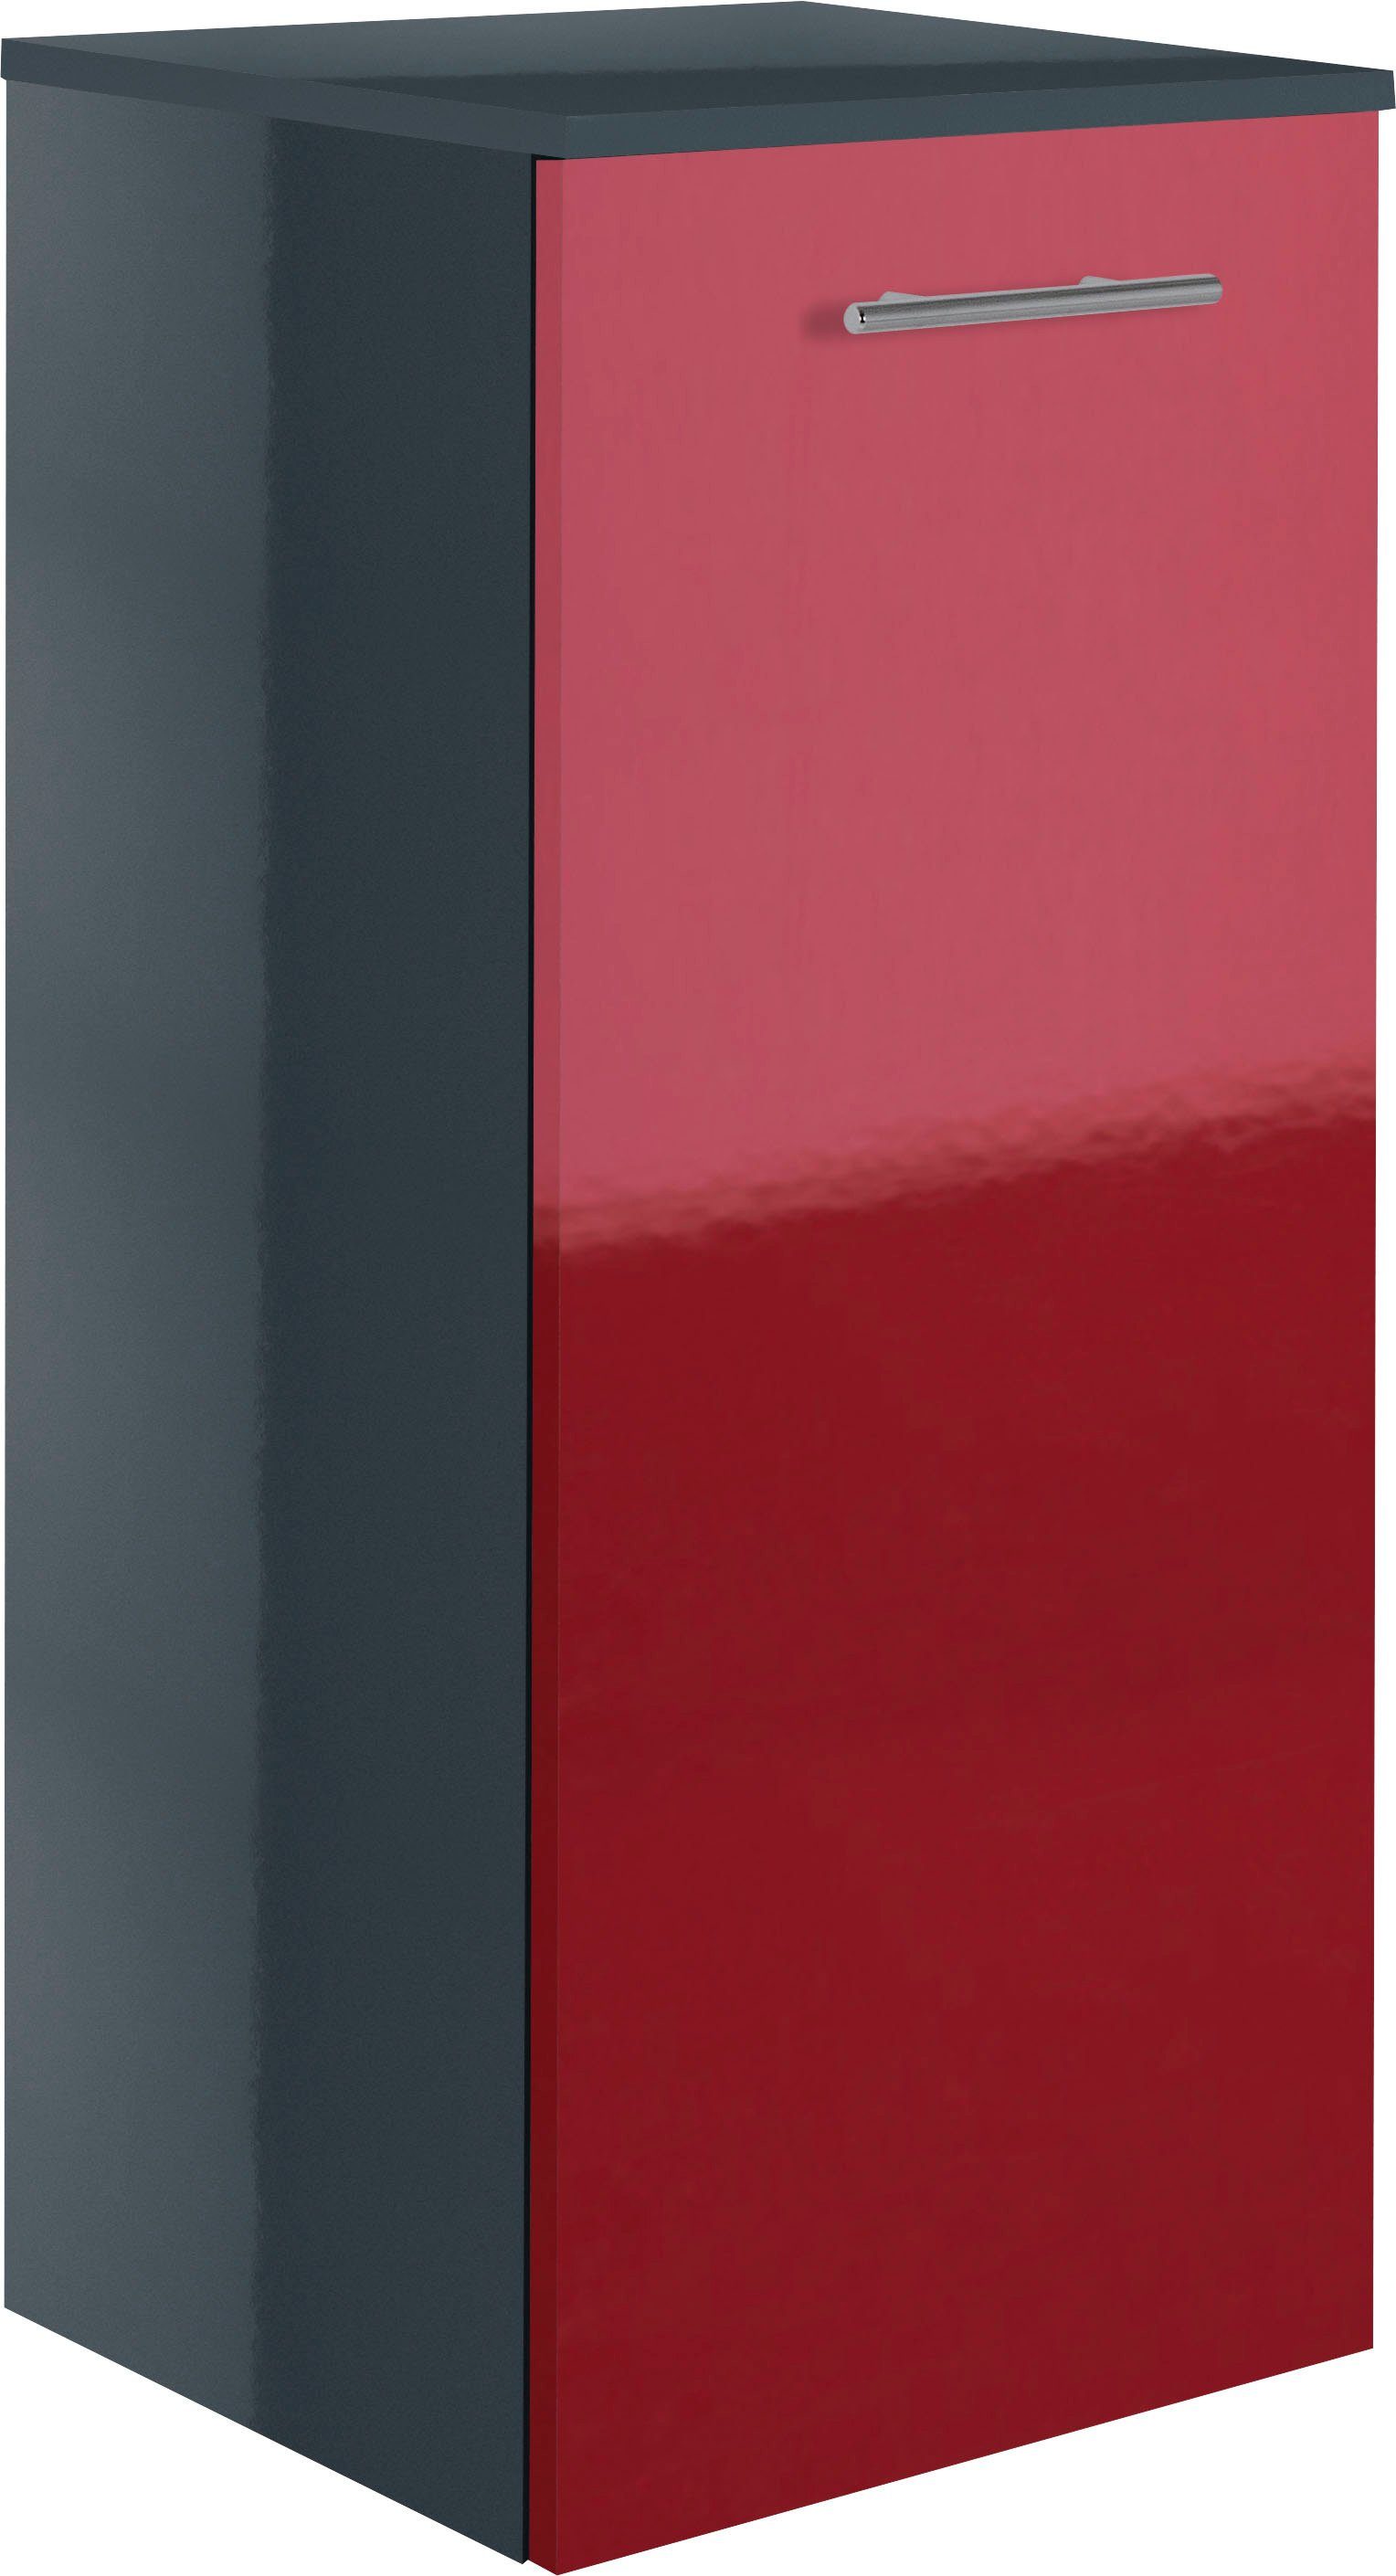 MARLIN Midischrank 3040, Breite 40 cm anthrazit | rot